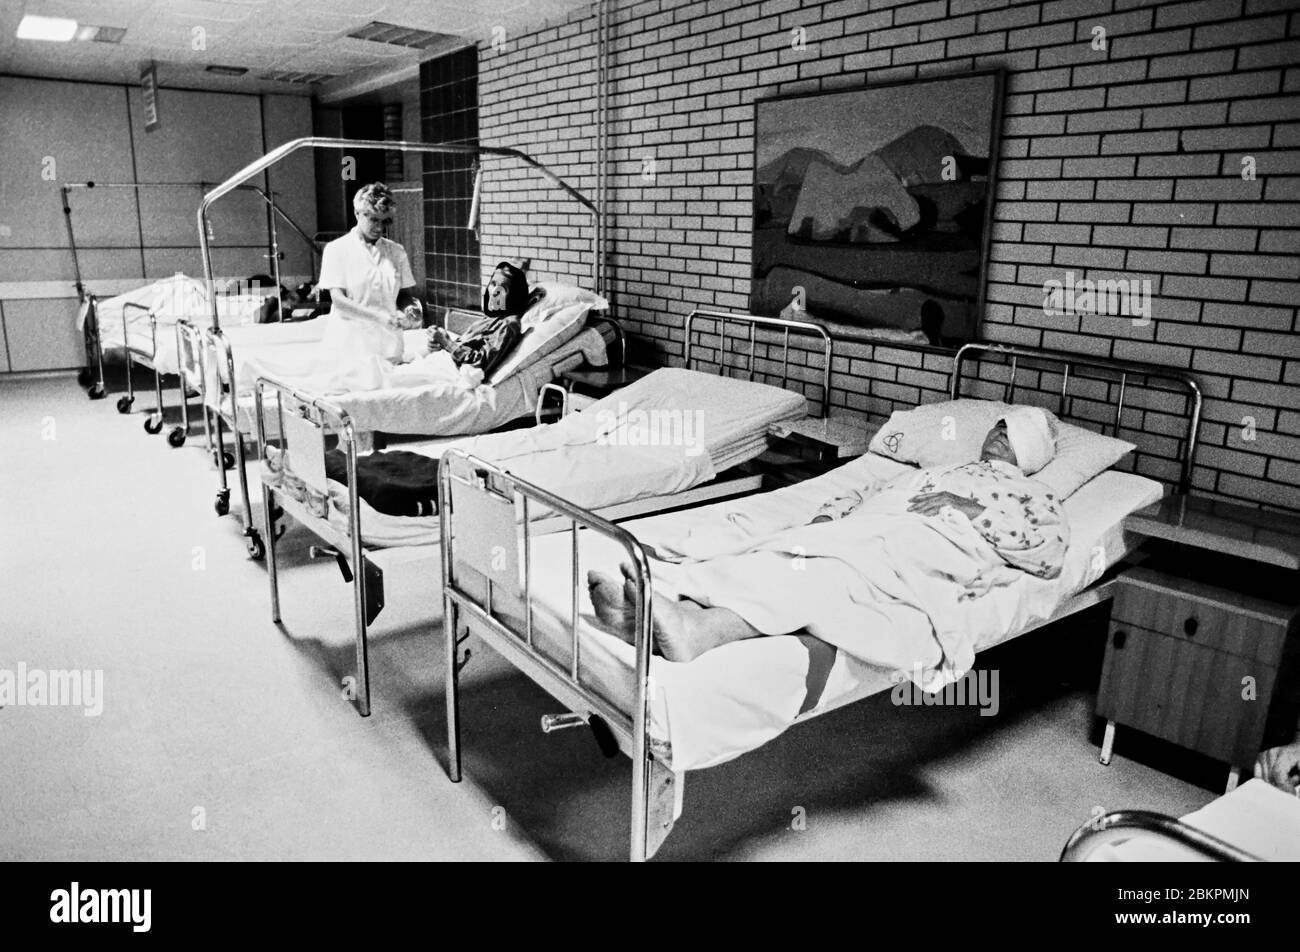 Bosnie 1993 près de Mostar pendant la guerre des Balkans - les réfugiés dans les lits d'hôpitaux attendent de voir ce que l'avenir réserve Banque D'Images